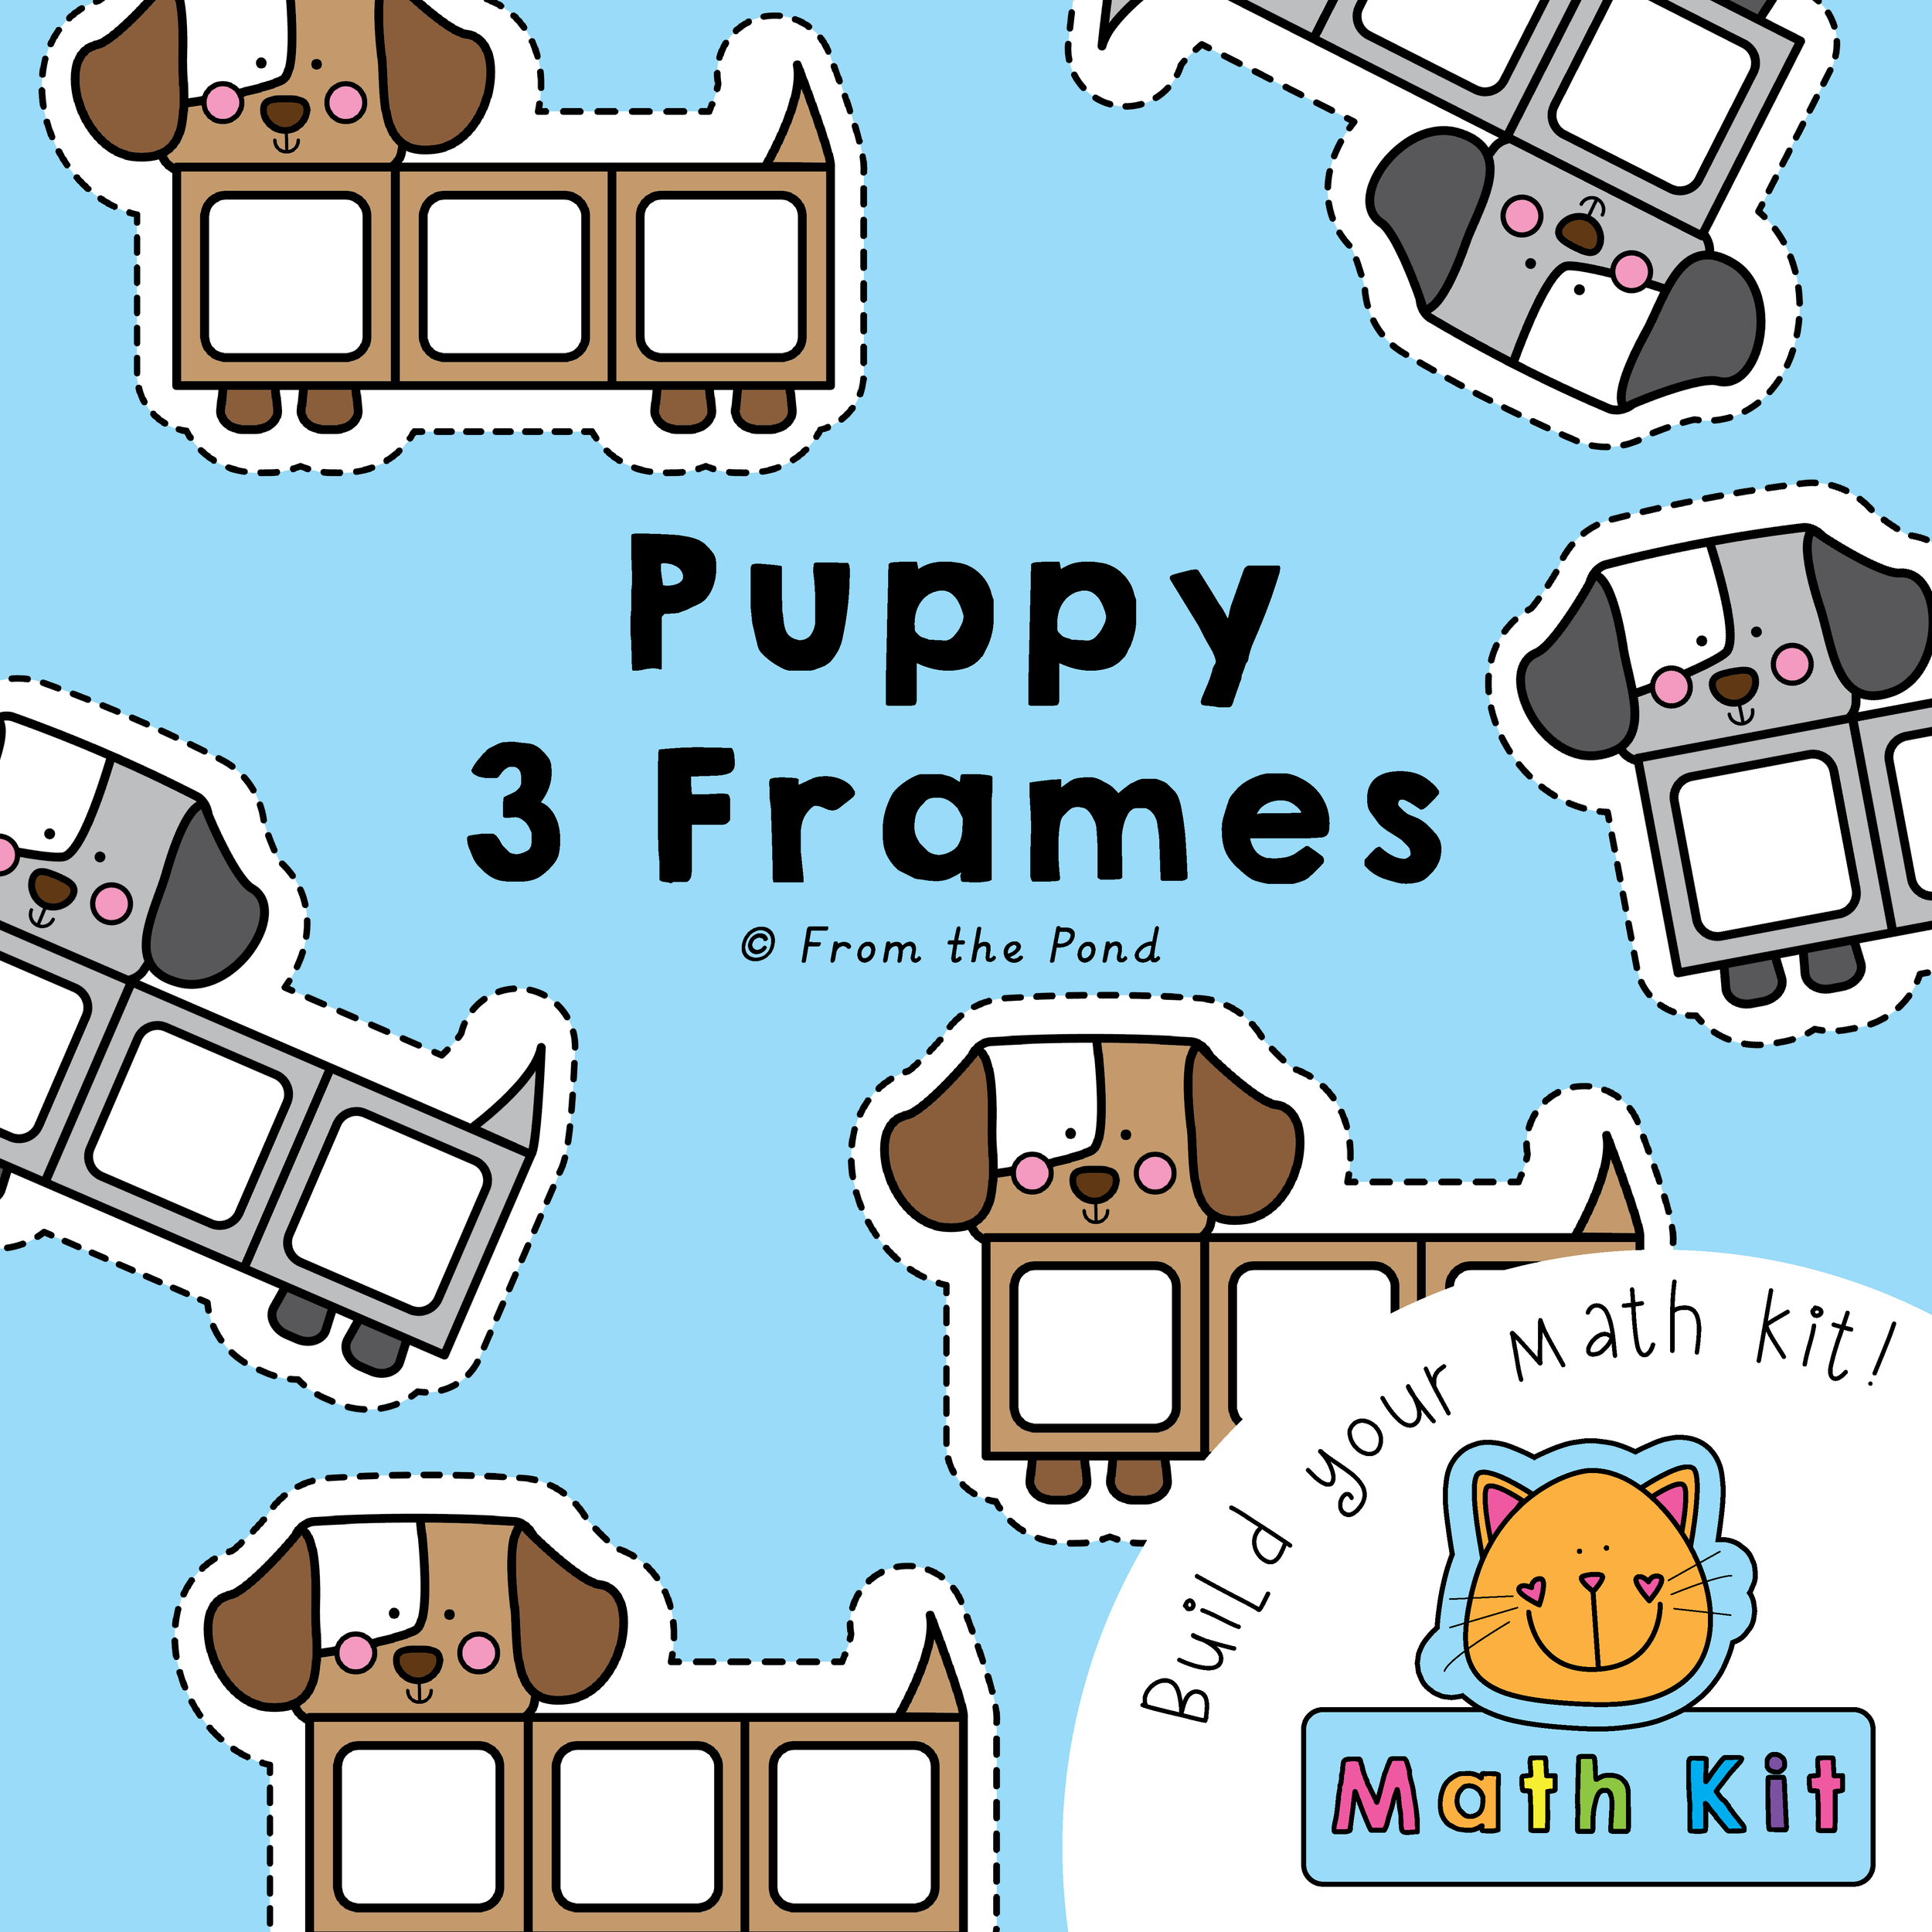 Puppy 3 Frames